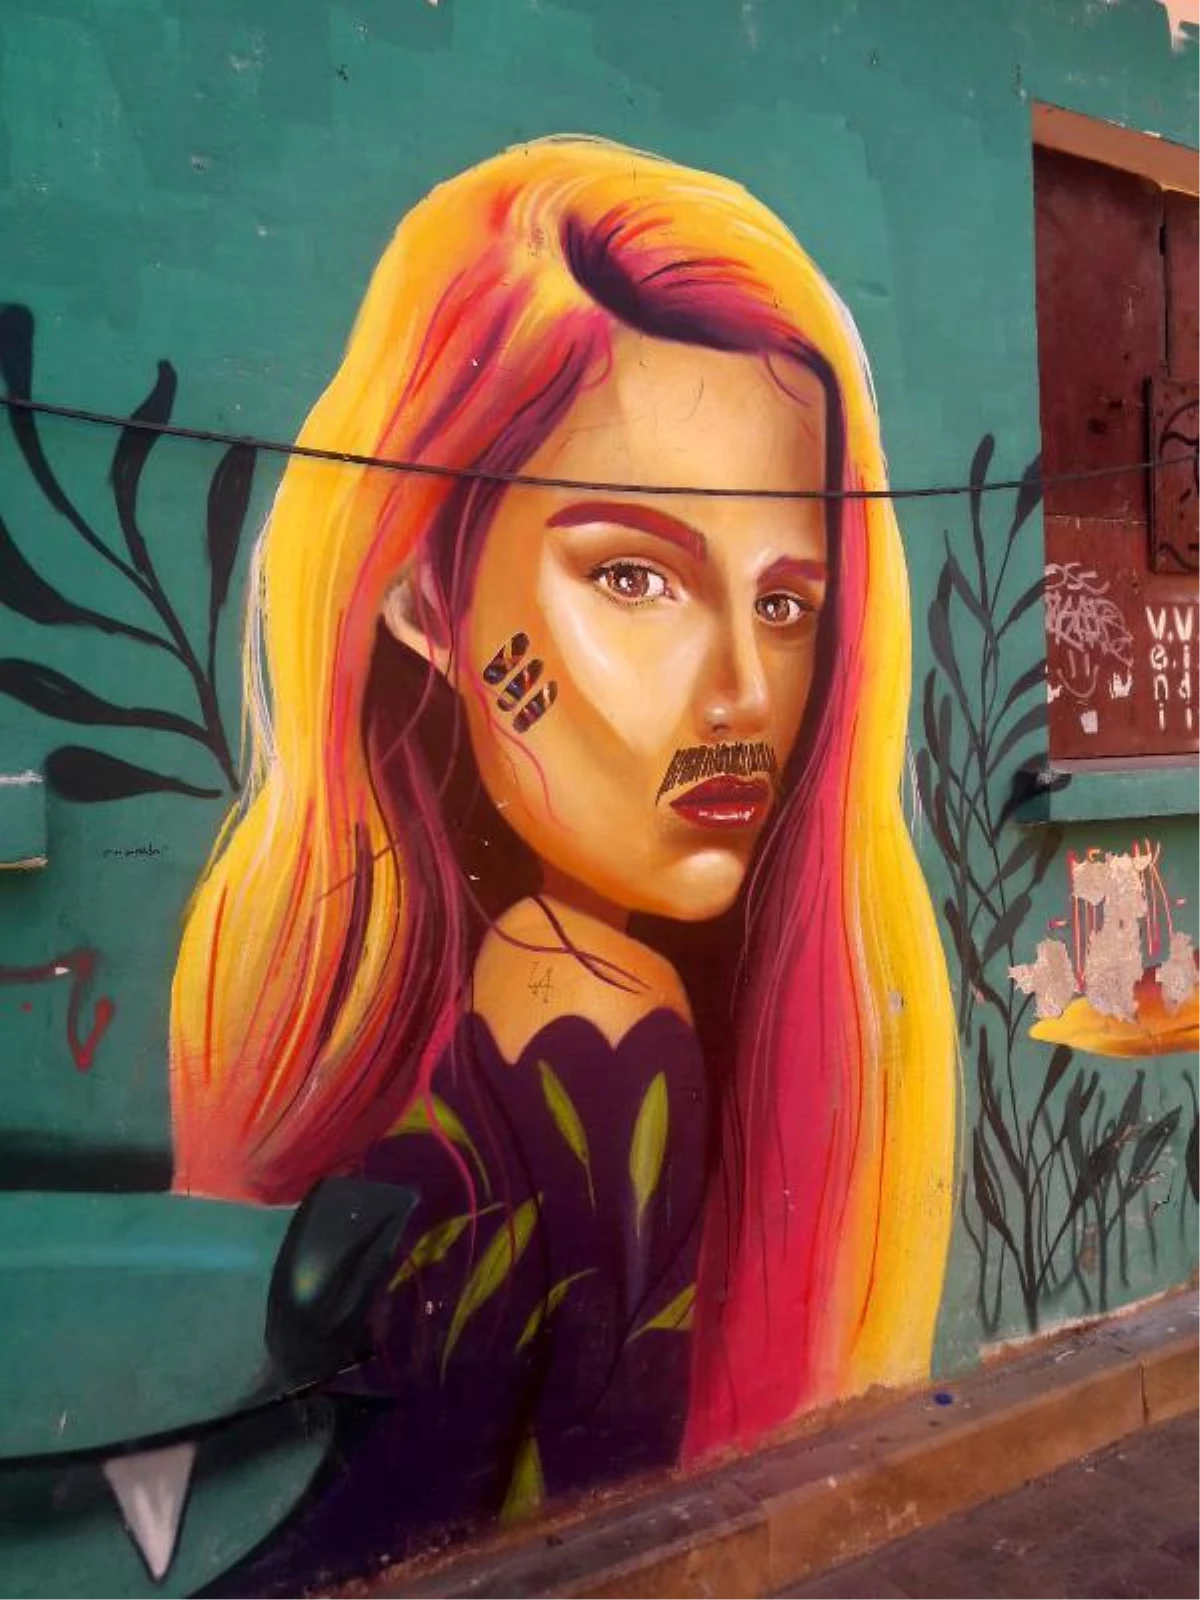 Kadın resmine bıyık, sokak ressamını isyan ettirdi